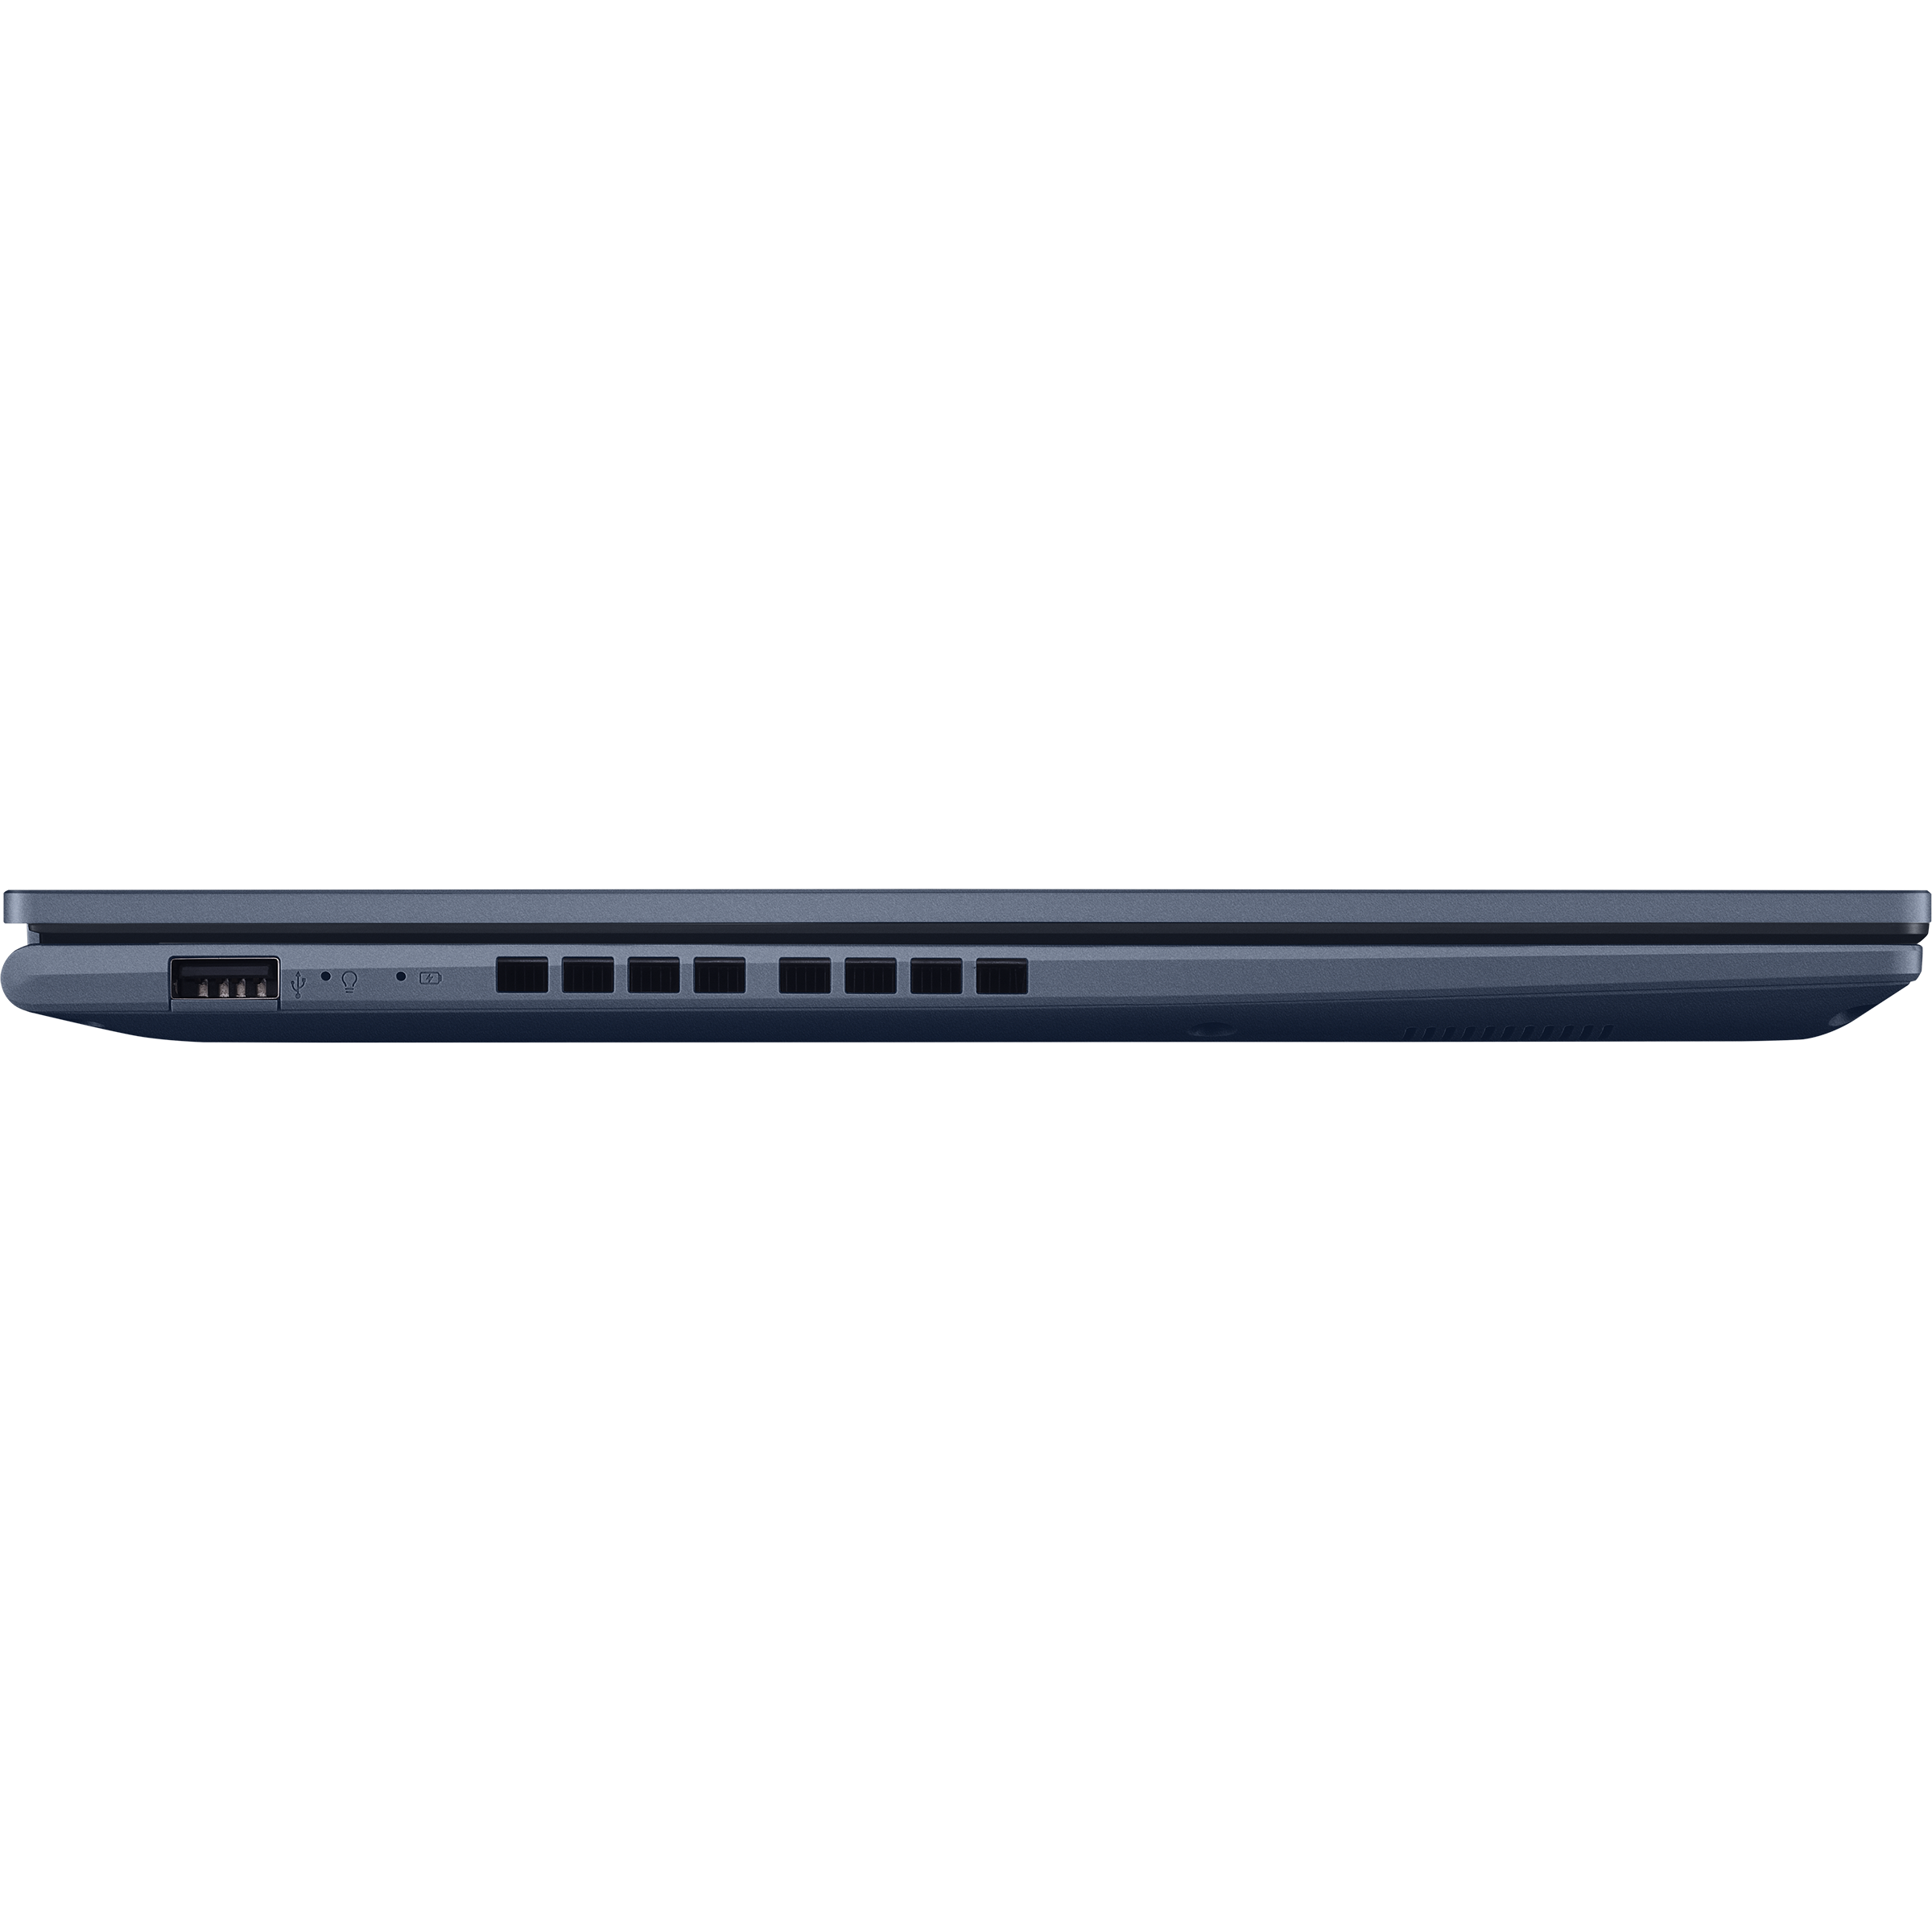 ASUS VivoBook delgado y ligero 2023, portátil 2 en 1 con pantalla táctil HD  14, 4 GB de RAM, 256 GB SSD, procesador Intel Celeron, NumberPad, tipo C